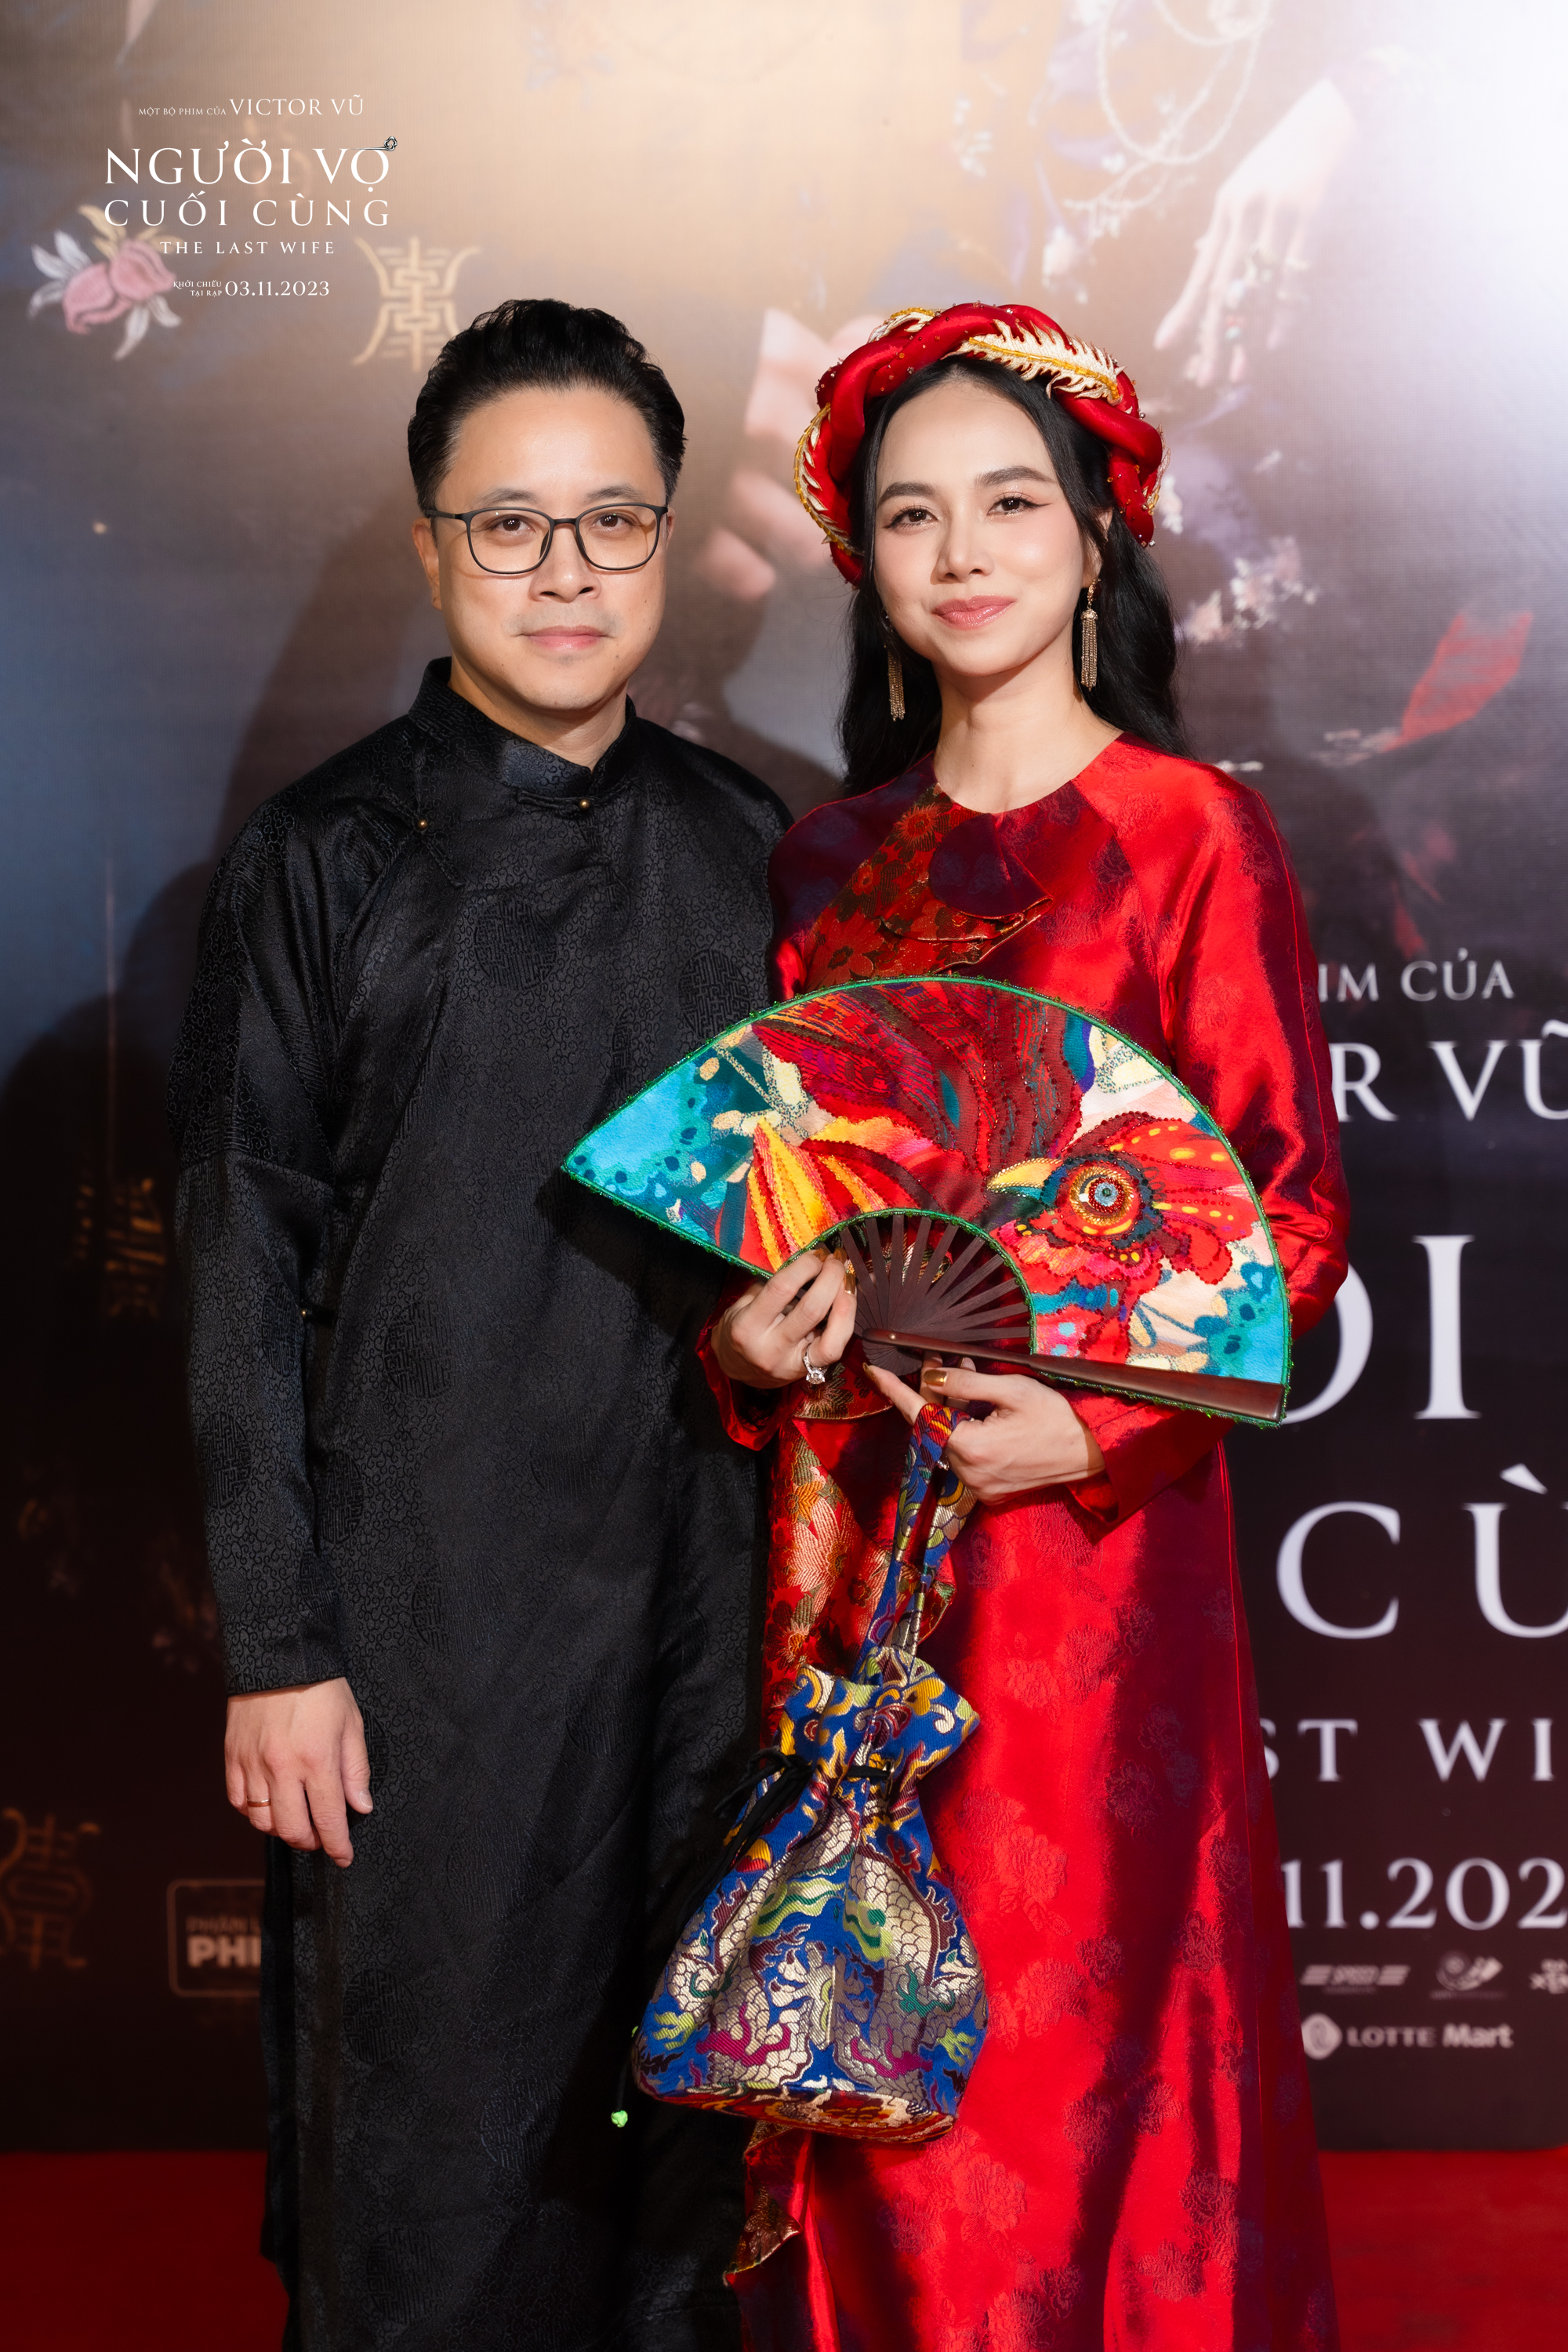 Showbiz Việt tề tựu chúc mừng phim mới của Victor Vũ - Ảnh 9.